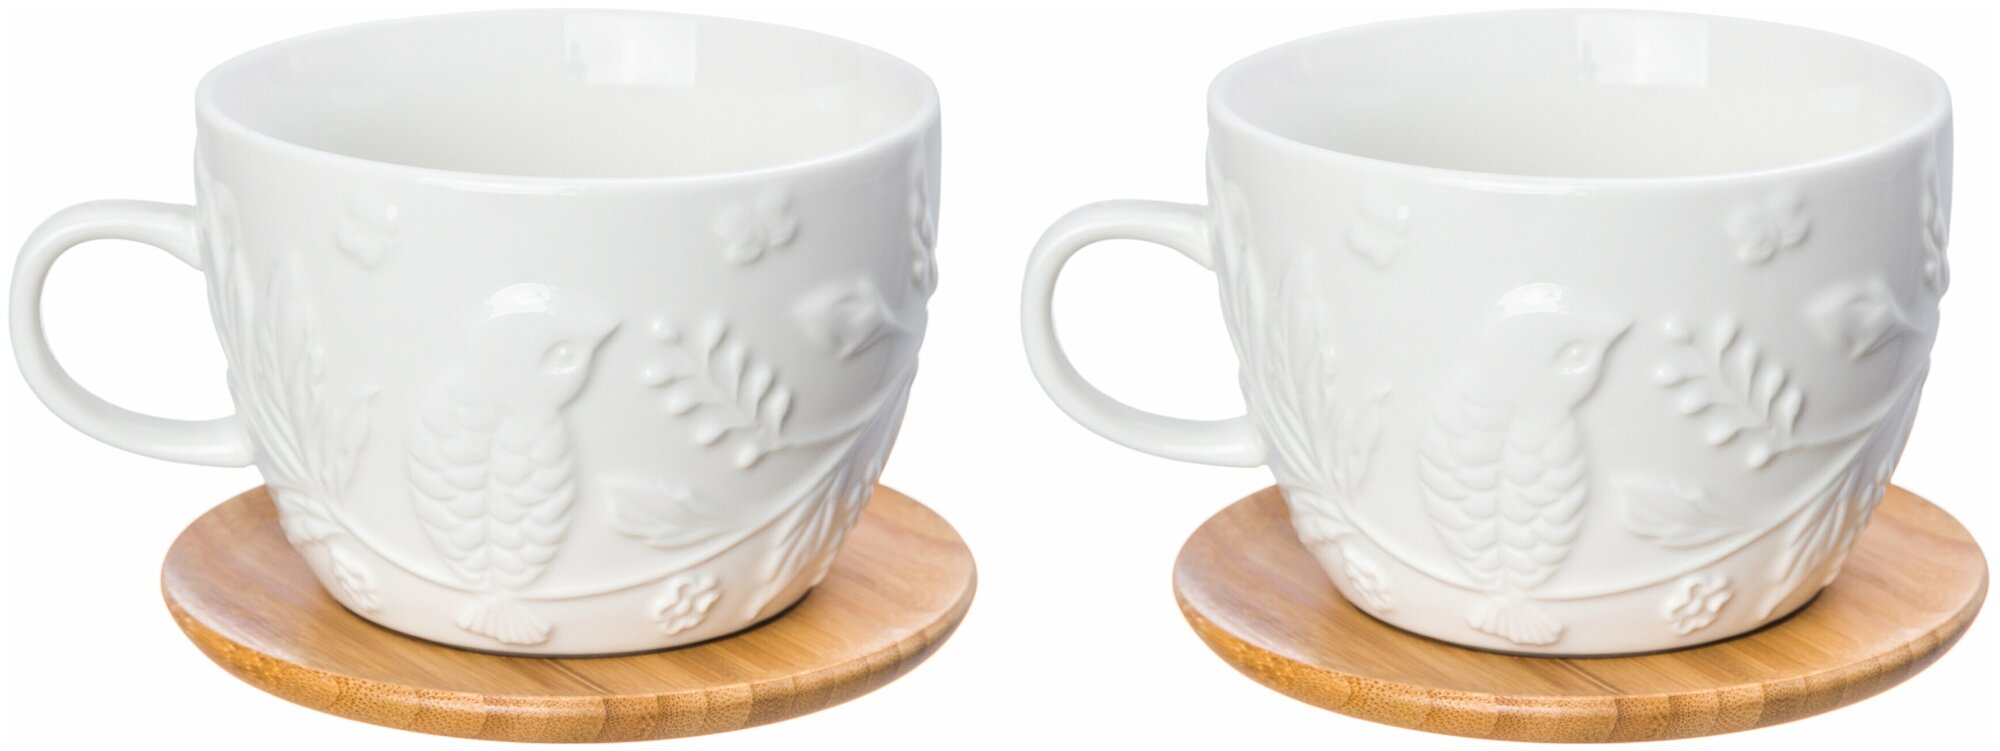 Чашка / кружка для капучино и кофе латте 500 мл 14х11,2х8 см Elan Gallery Птички на ветке на деревянной подставке, 2 штуки